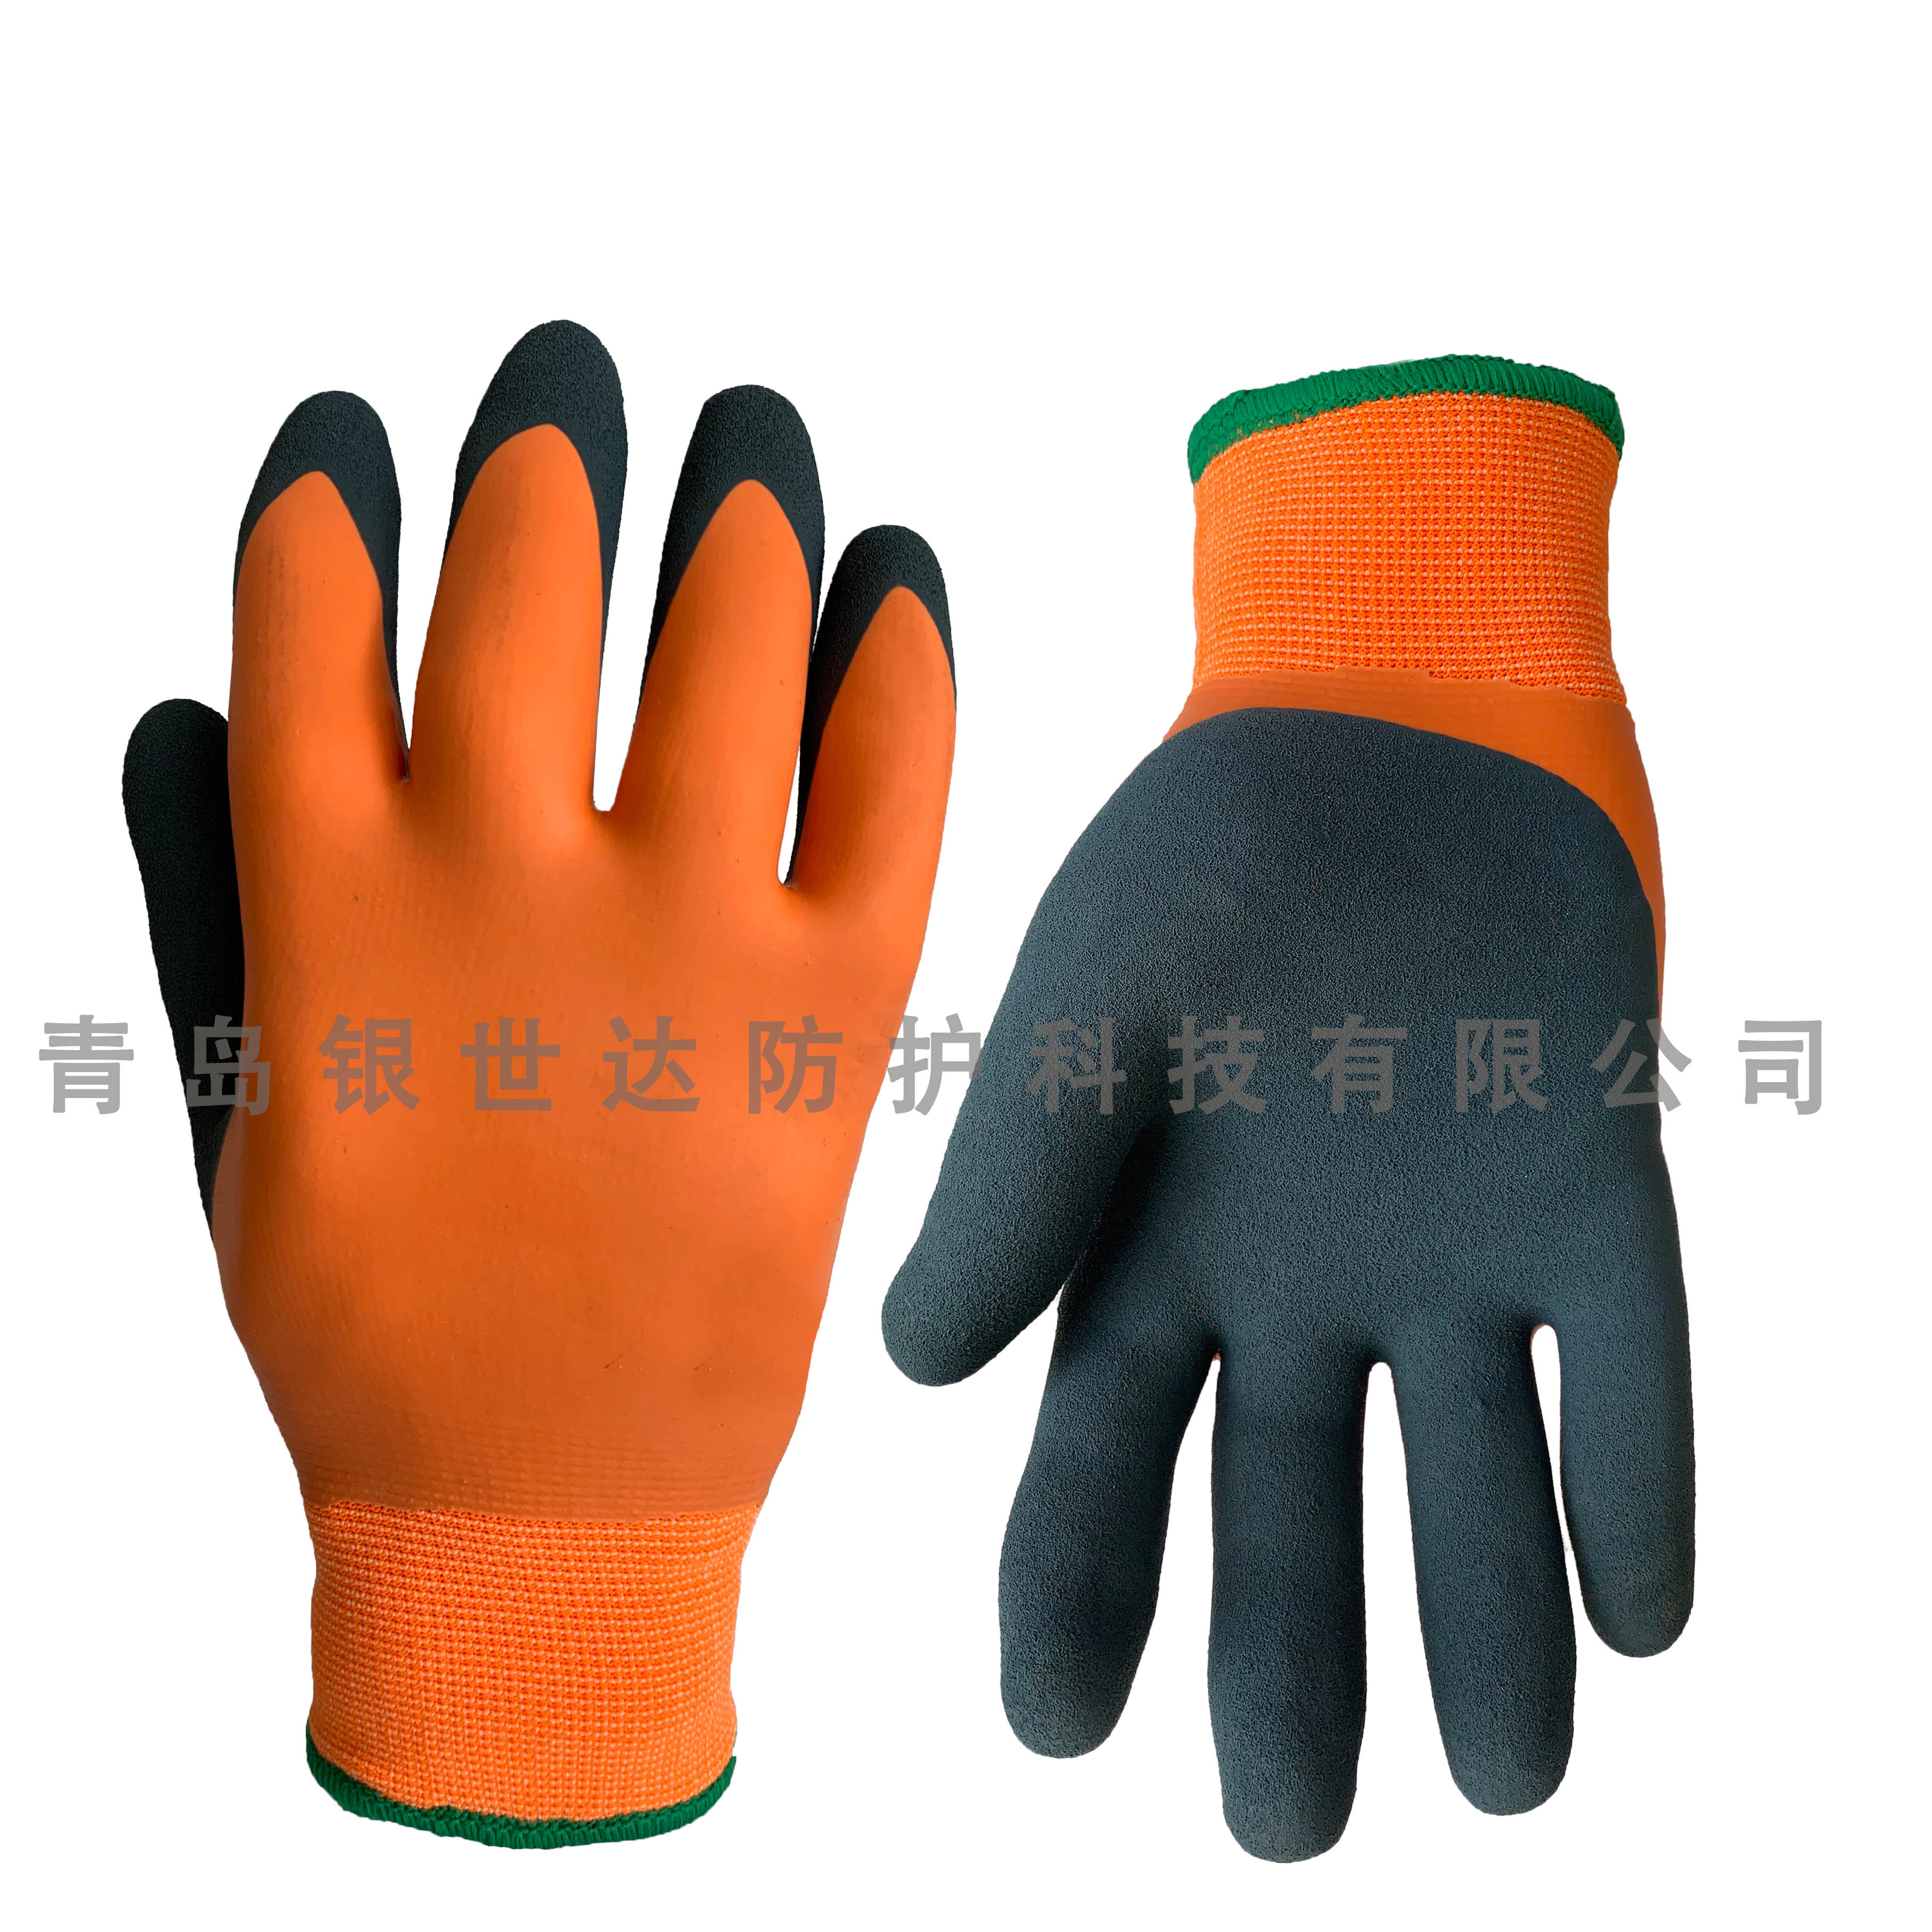 Sandy latex full coated waterproof glove